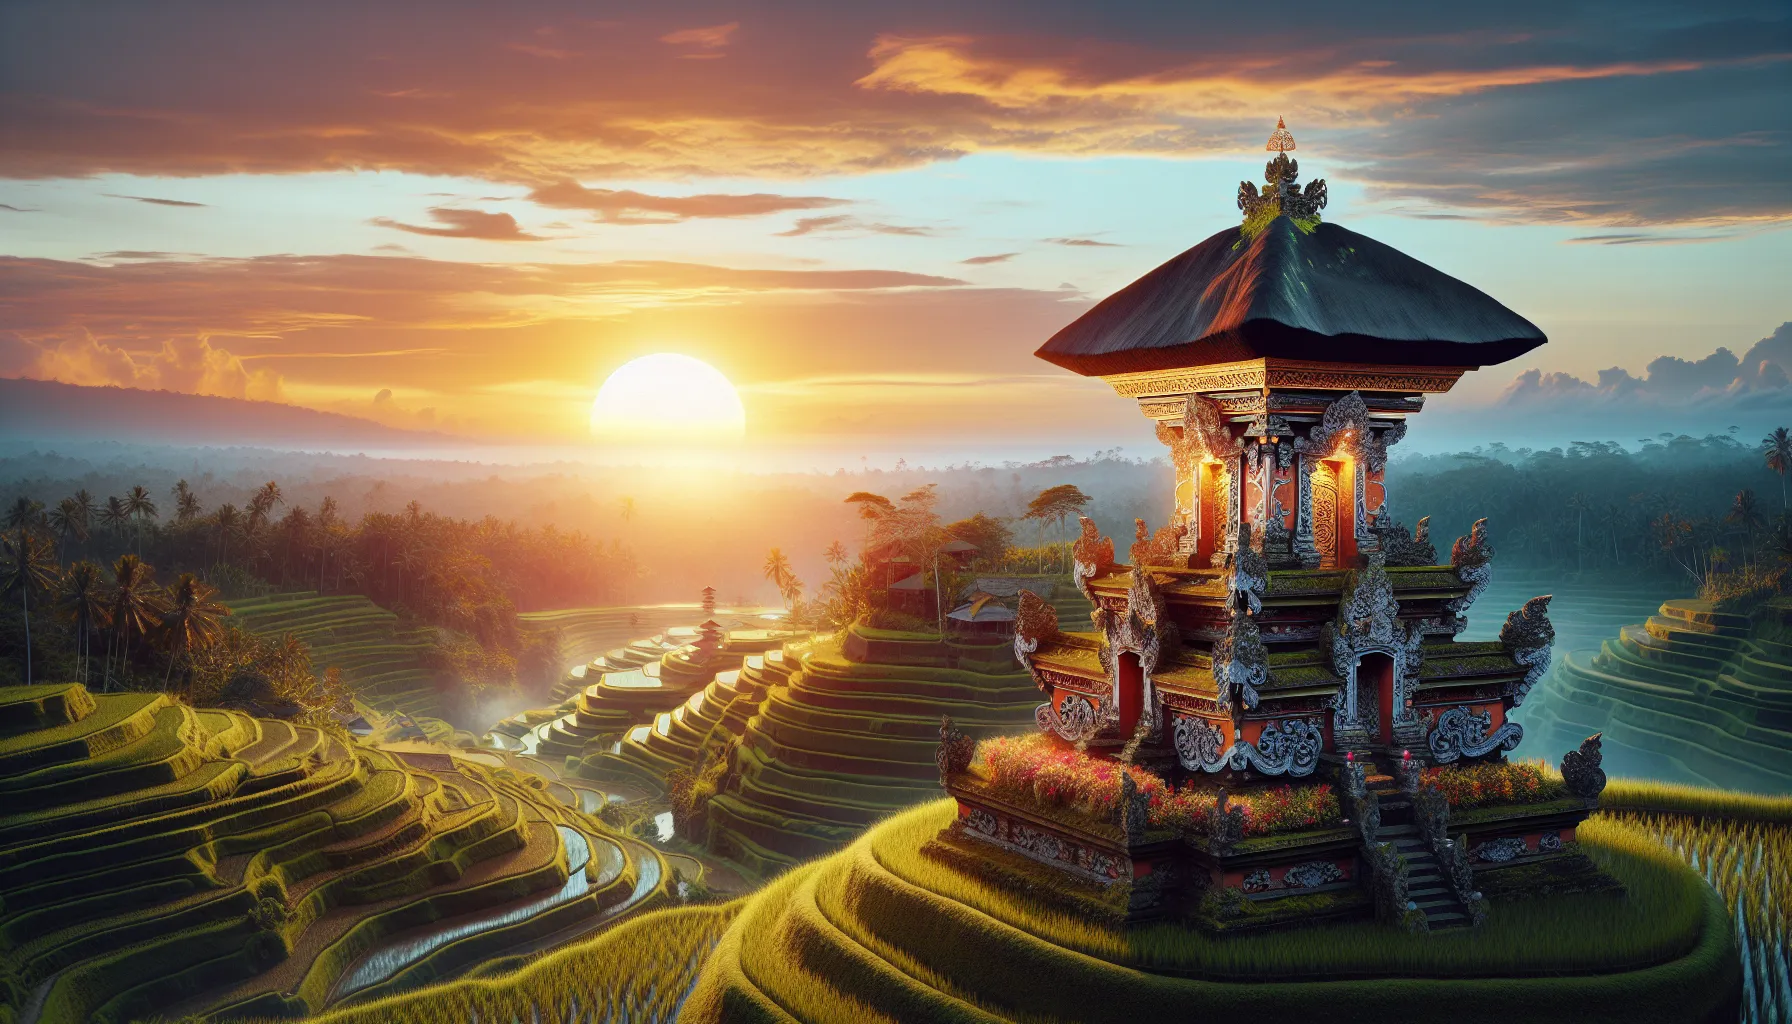 Bali, conhecida como a Ilha dos Deuses, é um destino mágico que guarda segredos profundos esperando para serem descobertos. Em apenas 3 dias, você terá a oportunidade de explorar os encantos desta ilha e mergulhar em sua cultura única.

No primeiro dia, comece sua jornada visitando os templos sagrados de Bali. O Templo de Besakih, conhecido como o 